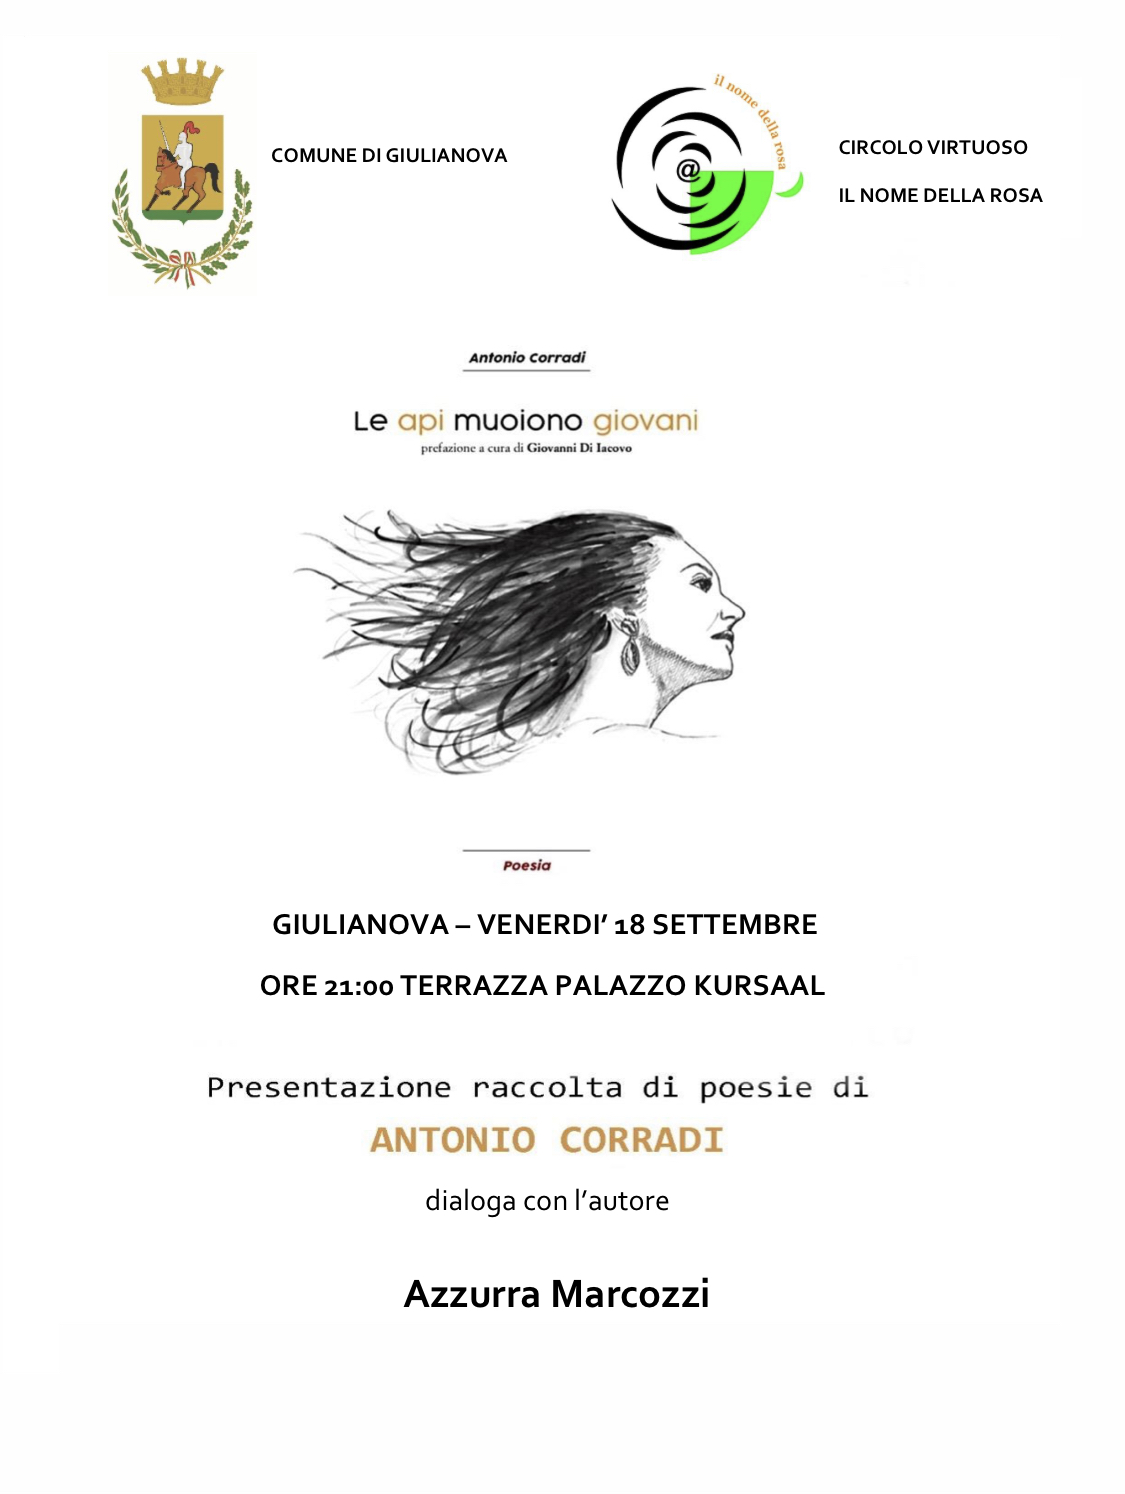 Libri&Editoria.”Le api muoiono giovani”, al Kursal(Giulianova) presentazione della silloge poetica di Antonio Corradi